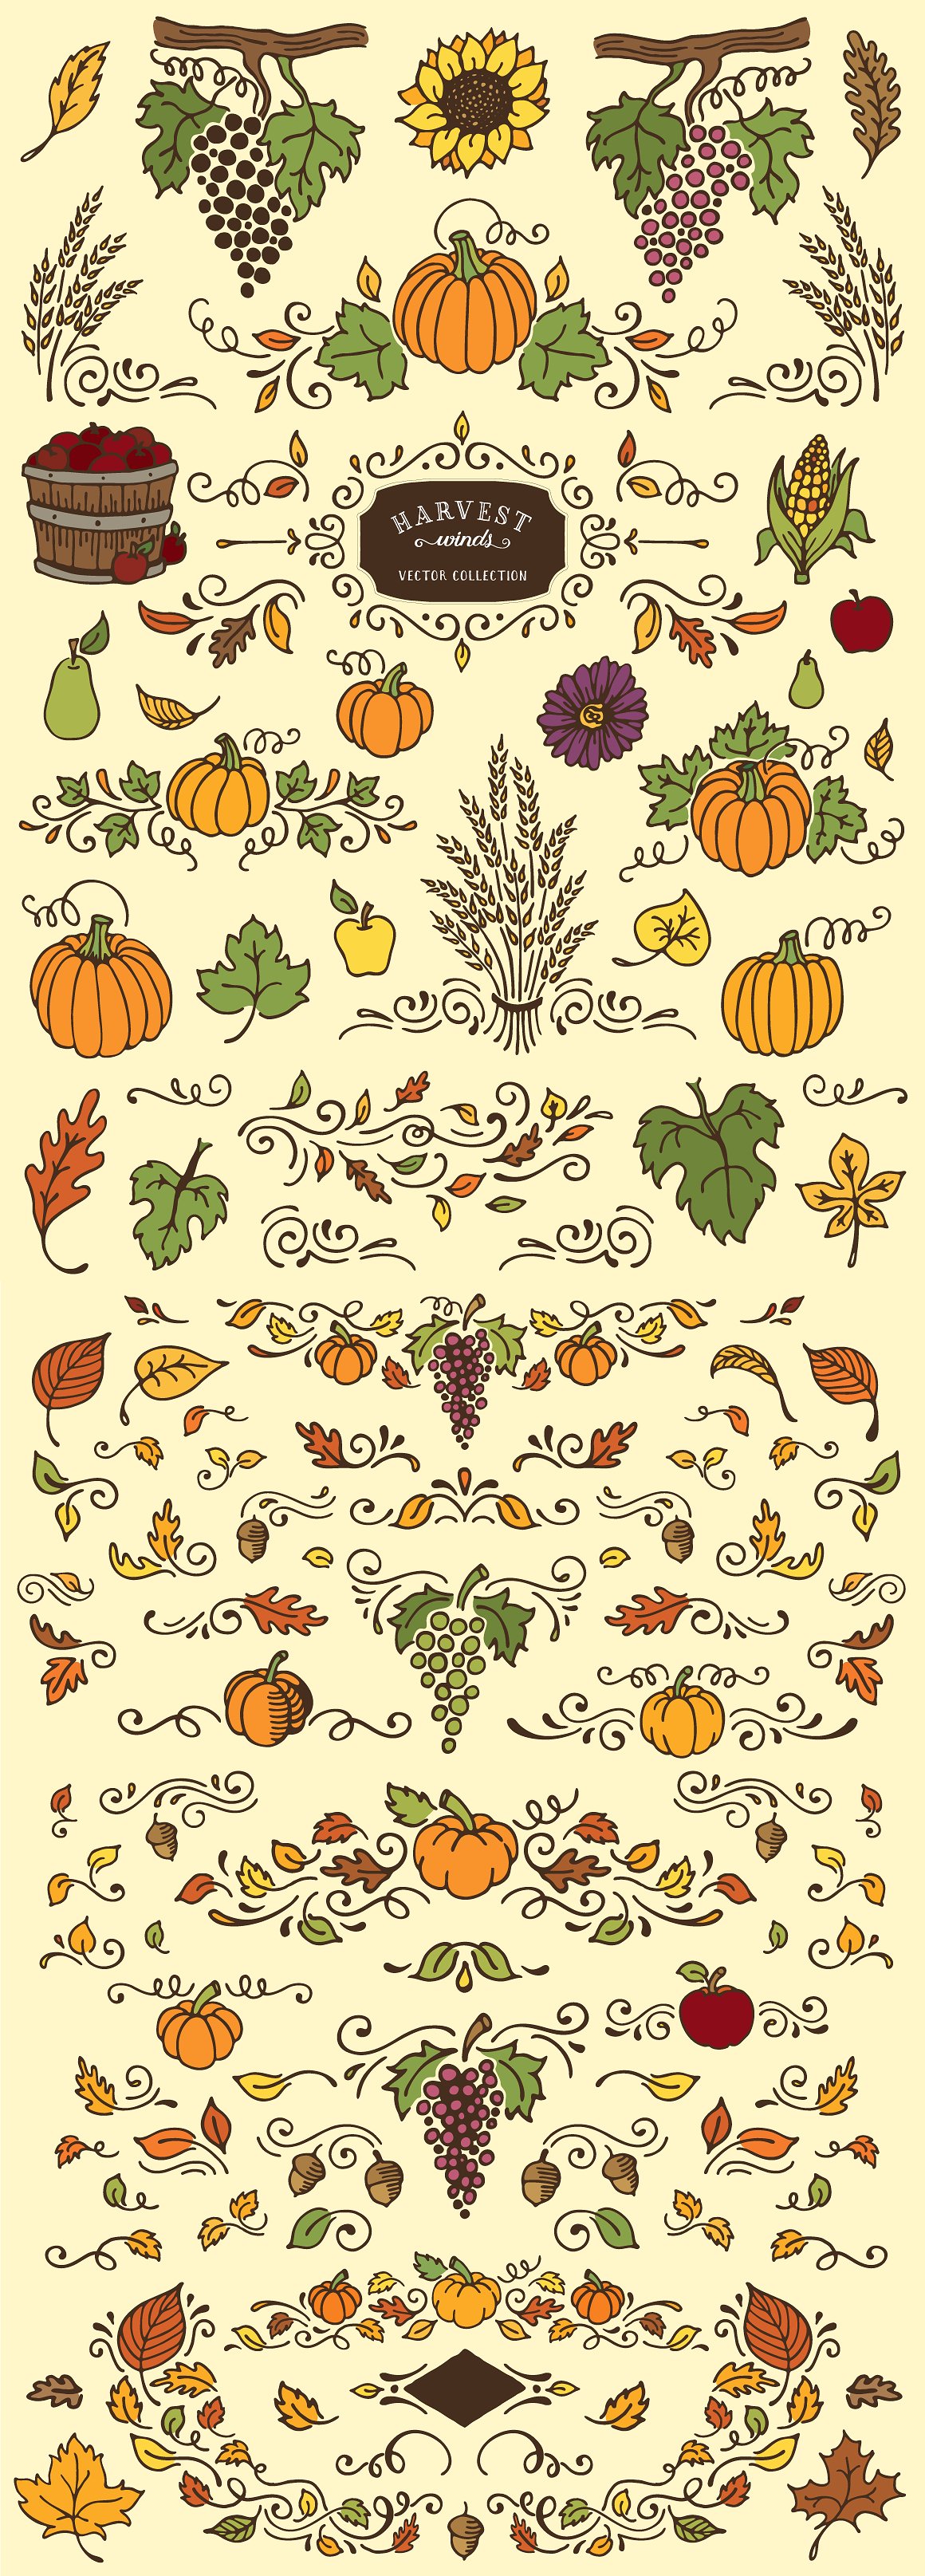 手绘秋天主题和边框插图素材Harvest Winds Vec